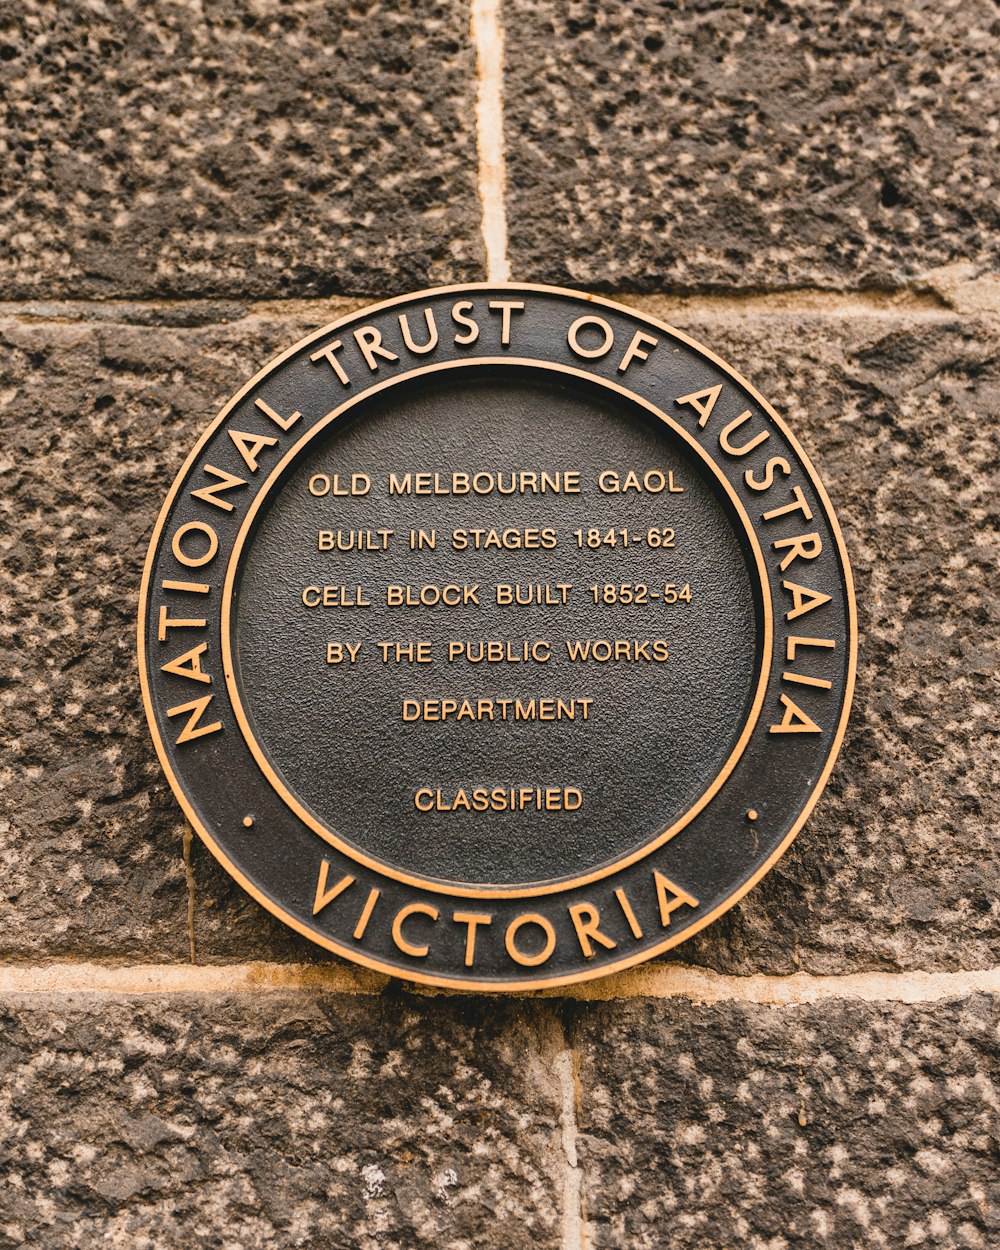 라운드 브라운과 블랙 내셔널 트러스트 오브 오스트레일리아 빅토리아 코인